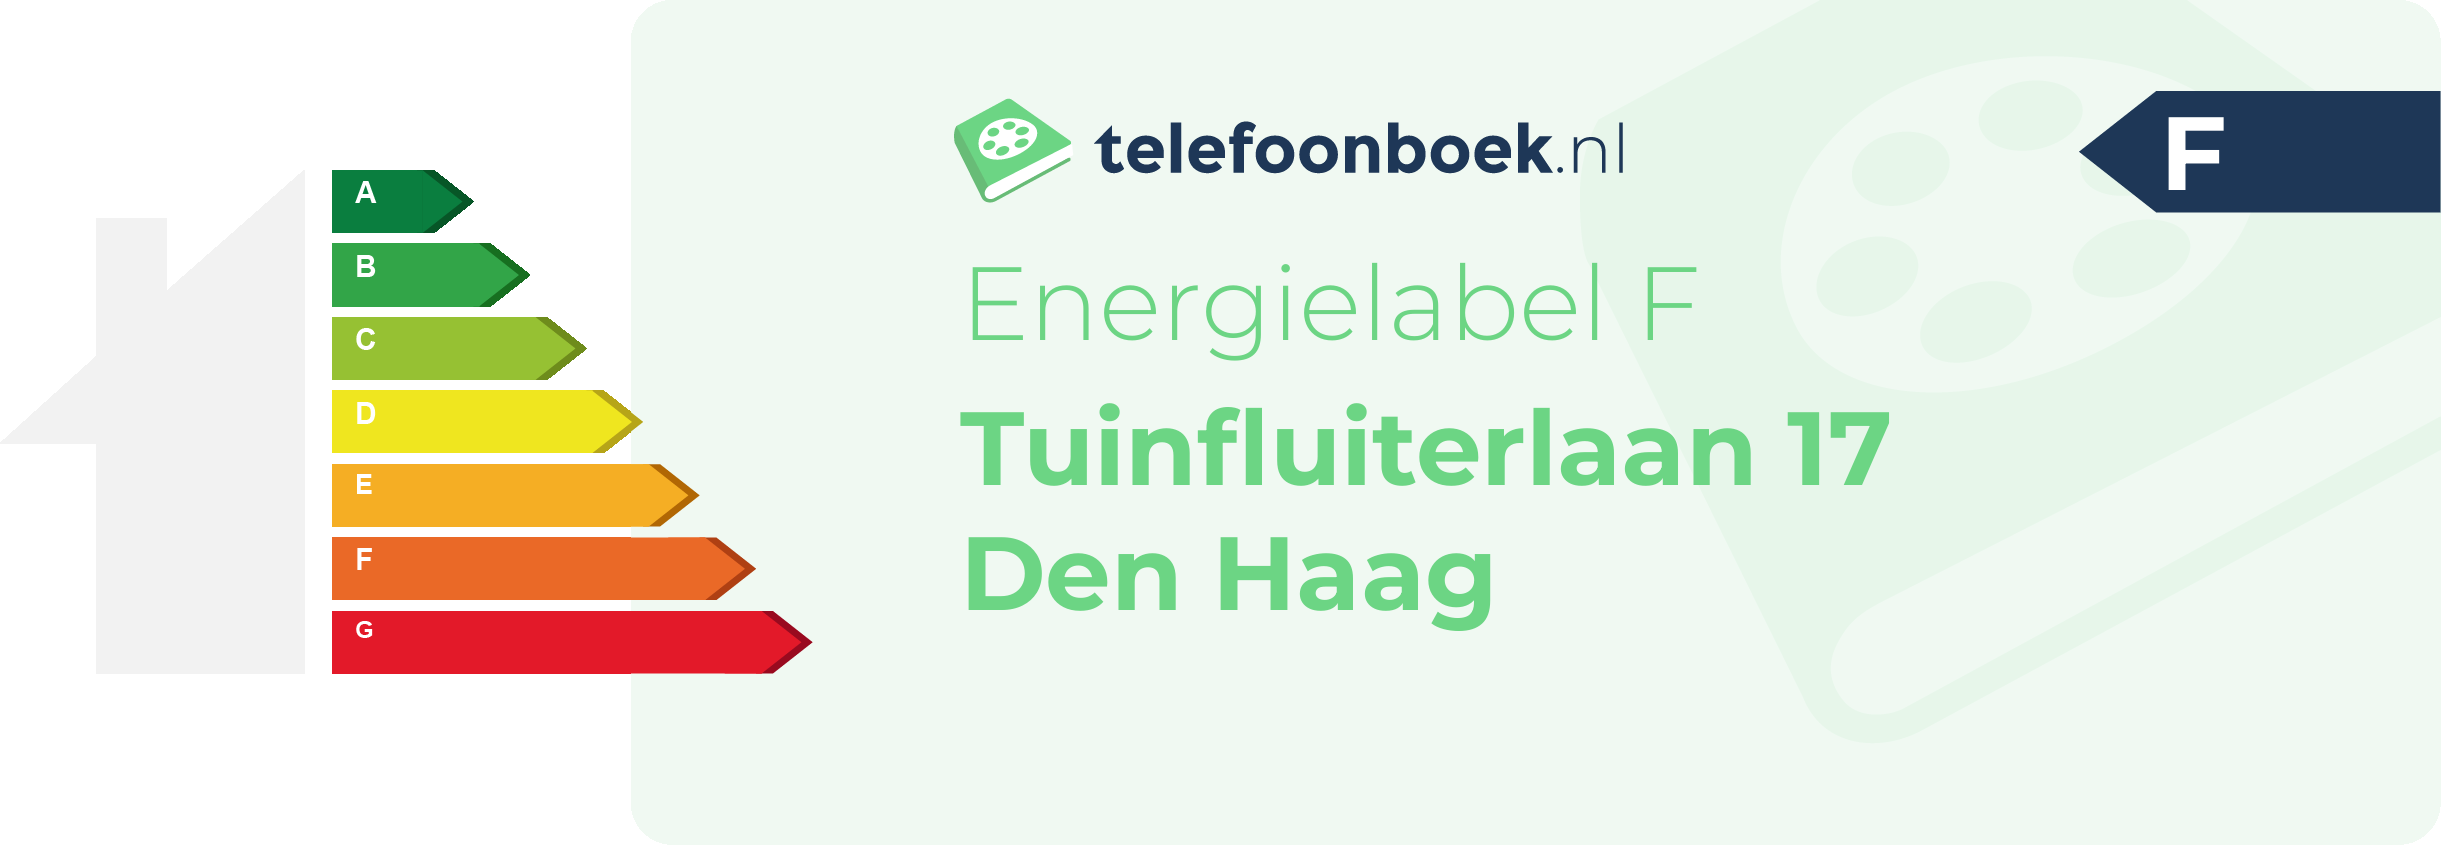 Energielabel Tuinfluiterlaan 17 Den Haag